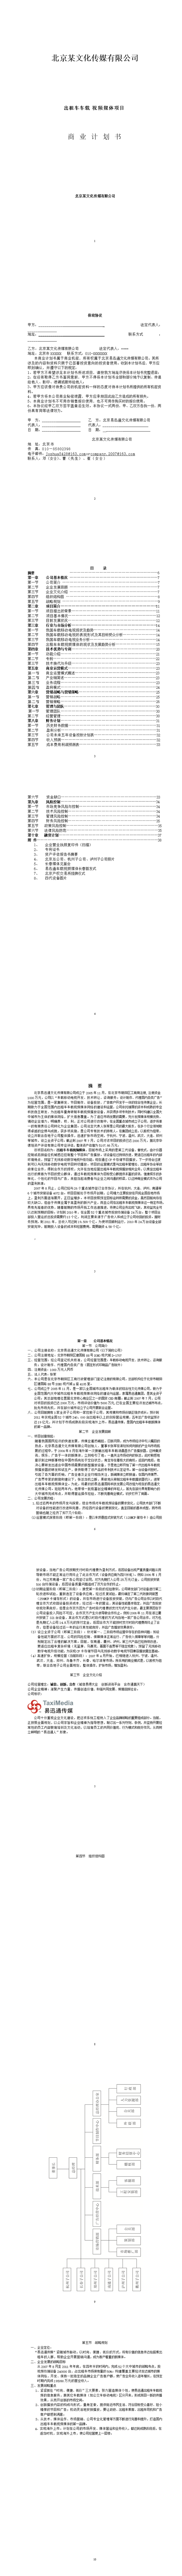 北京文化传媒有限公司商业计划书